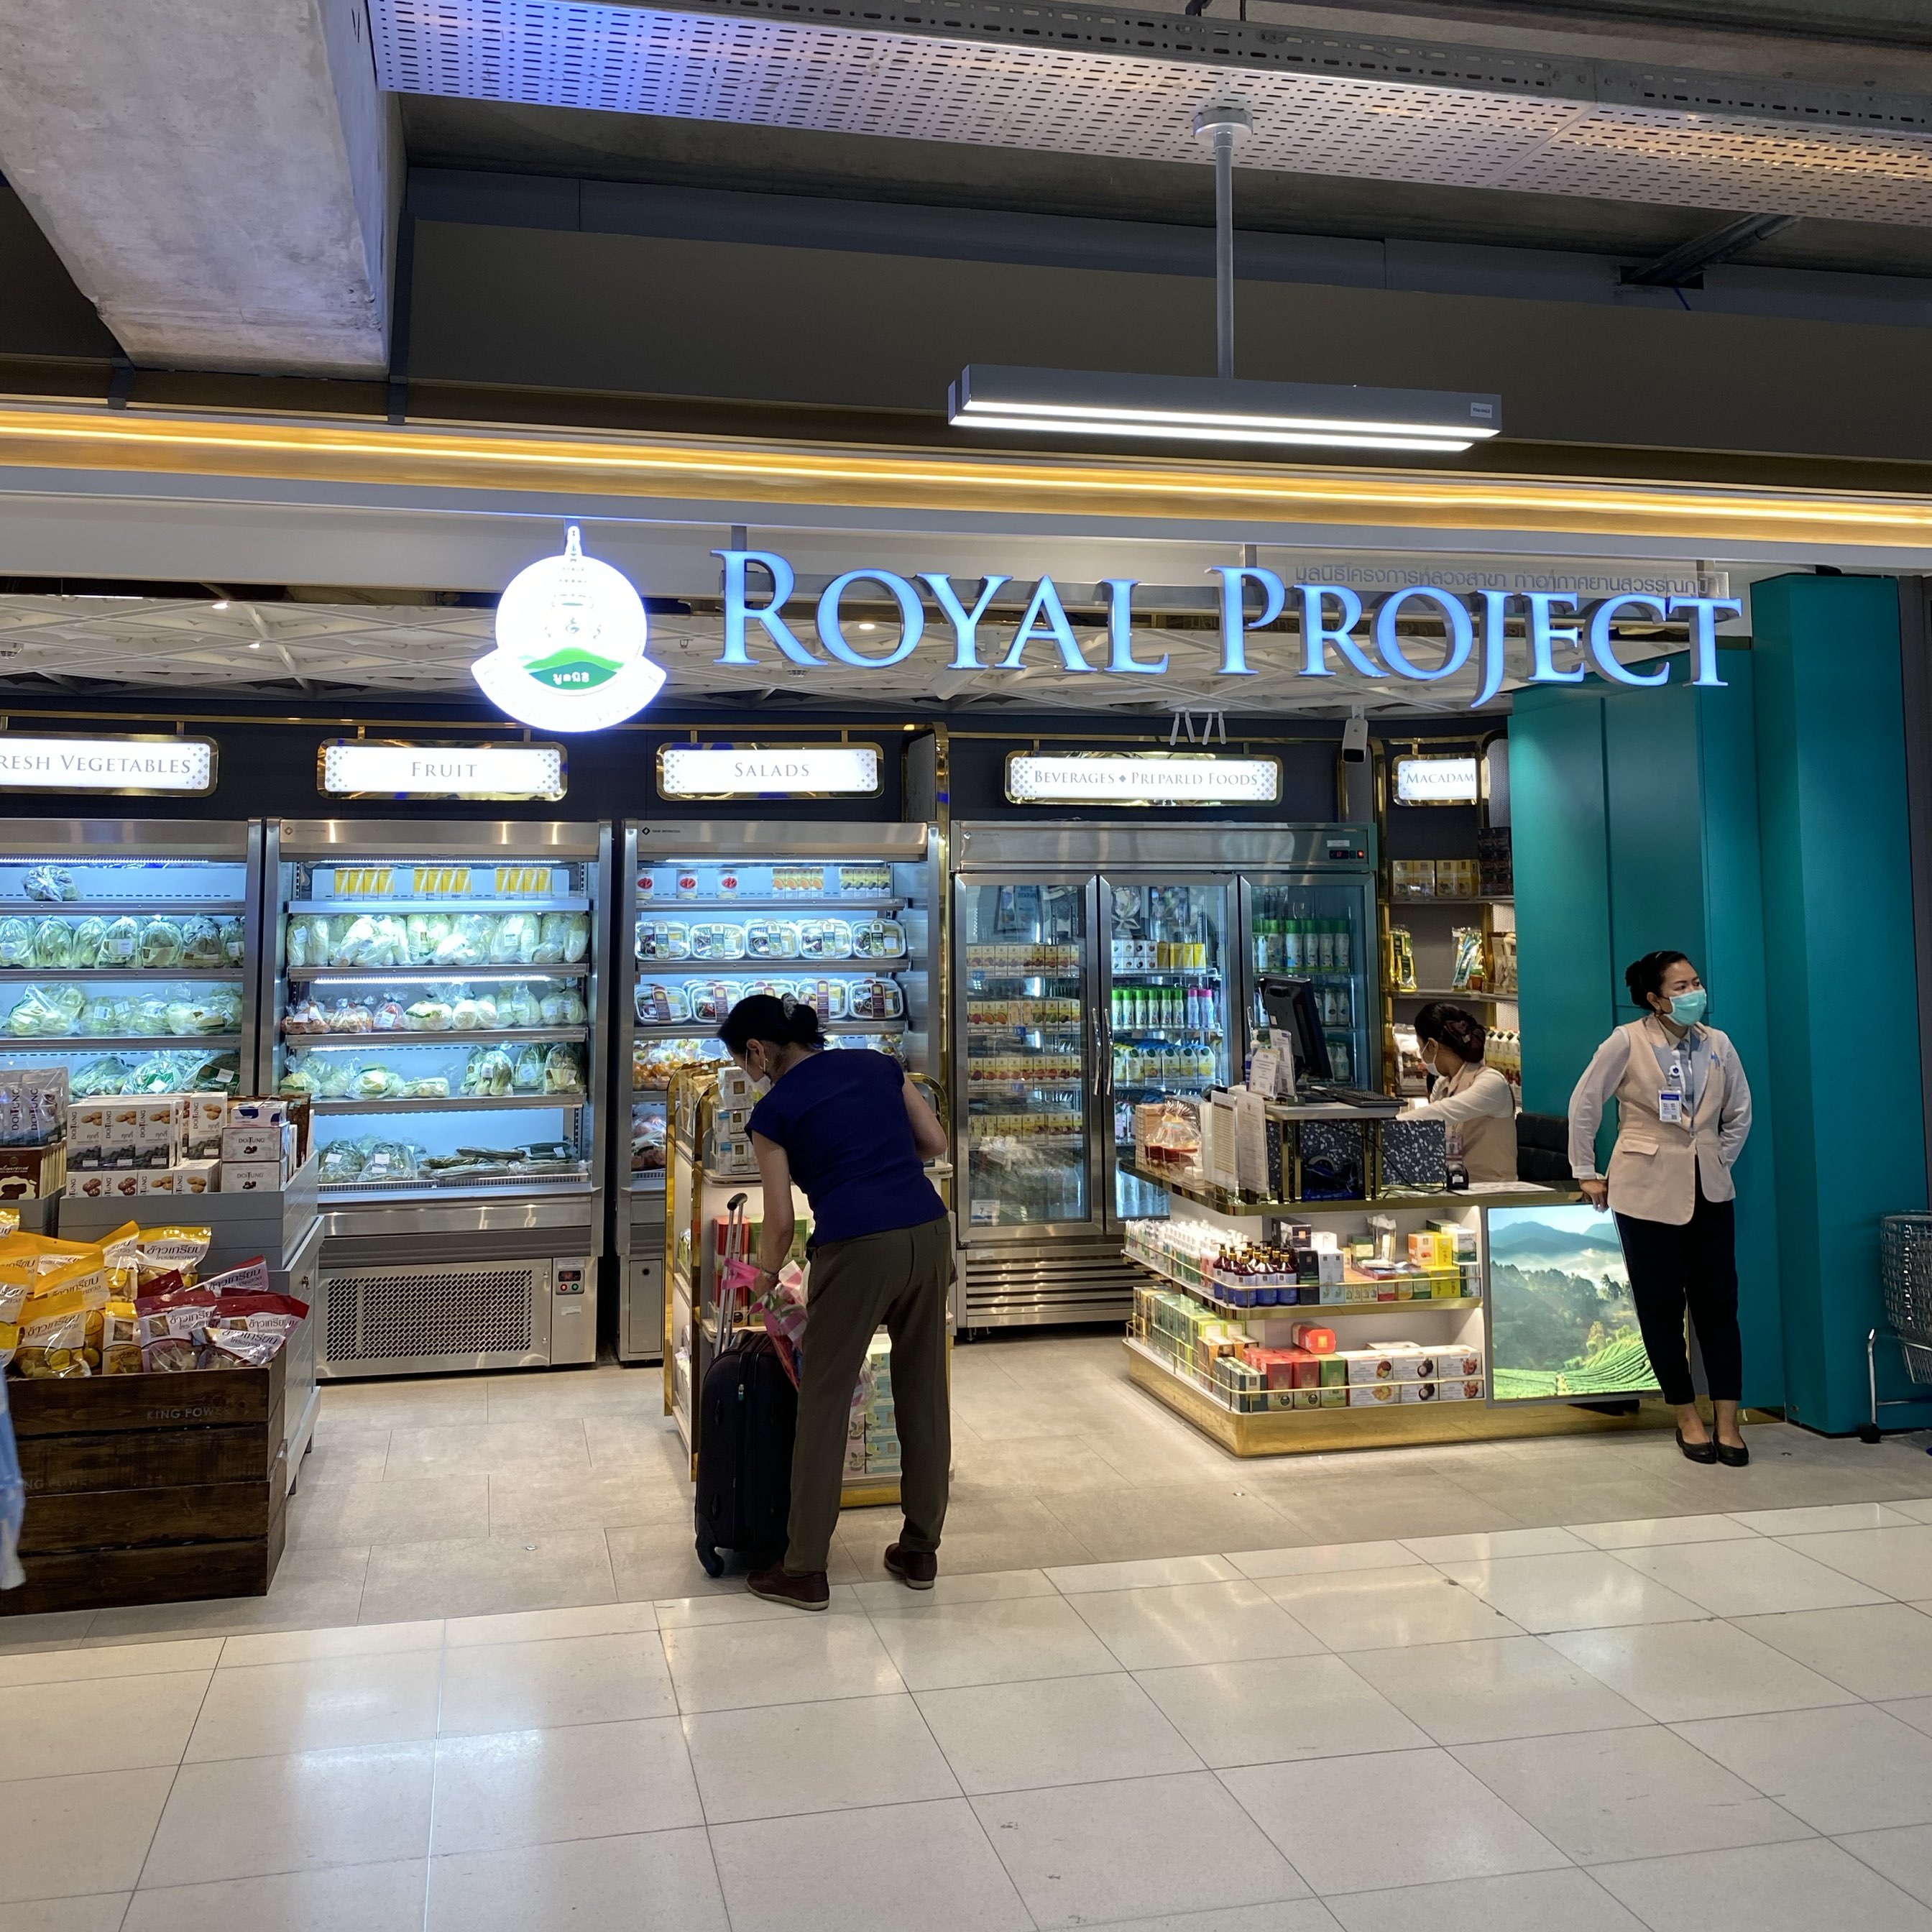 在飞回家之前,在皇家项目上停下来买新鲜蔬菜和水果。